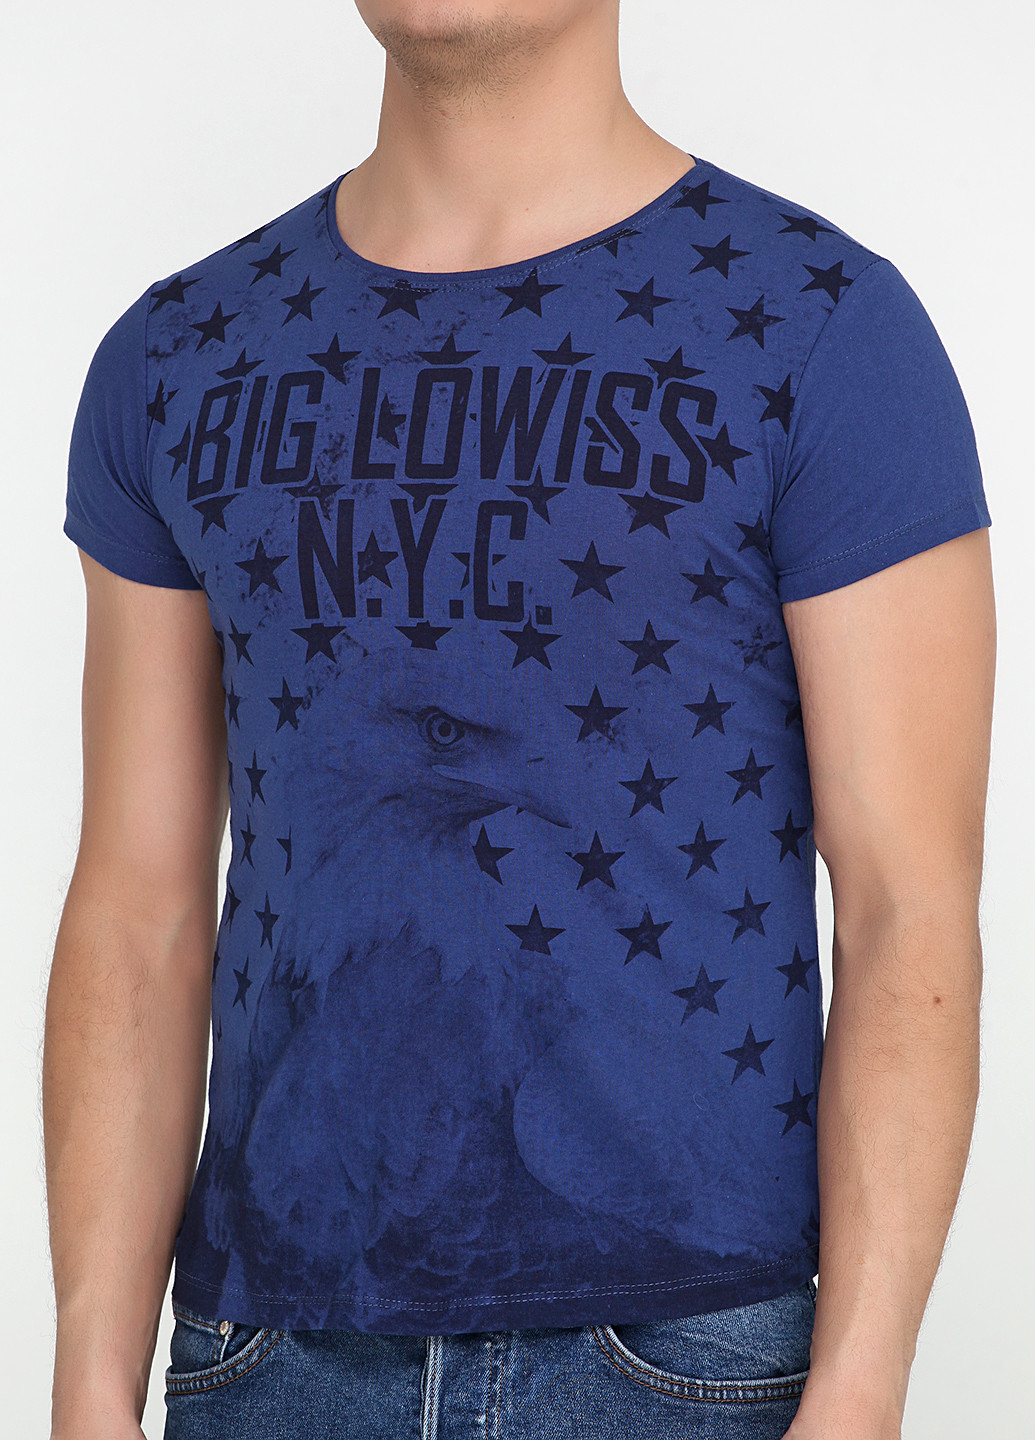 Темно-синя футболка Big Lowiss